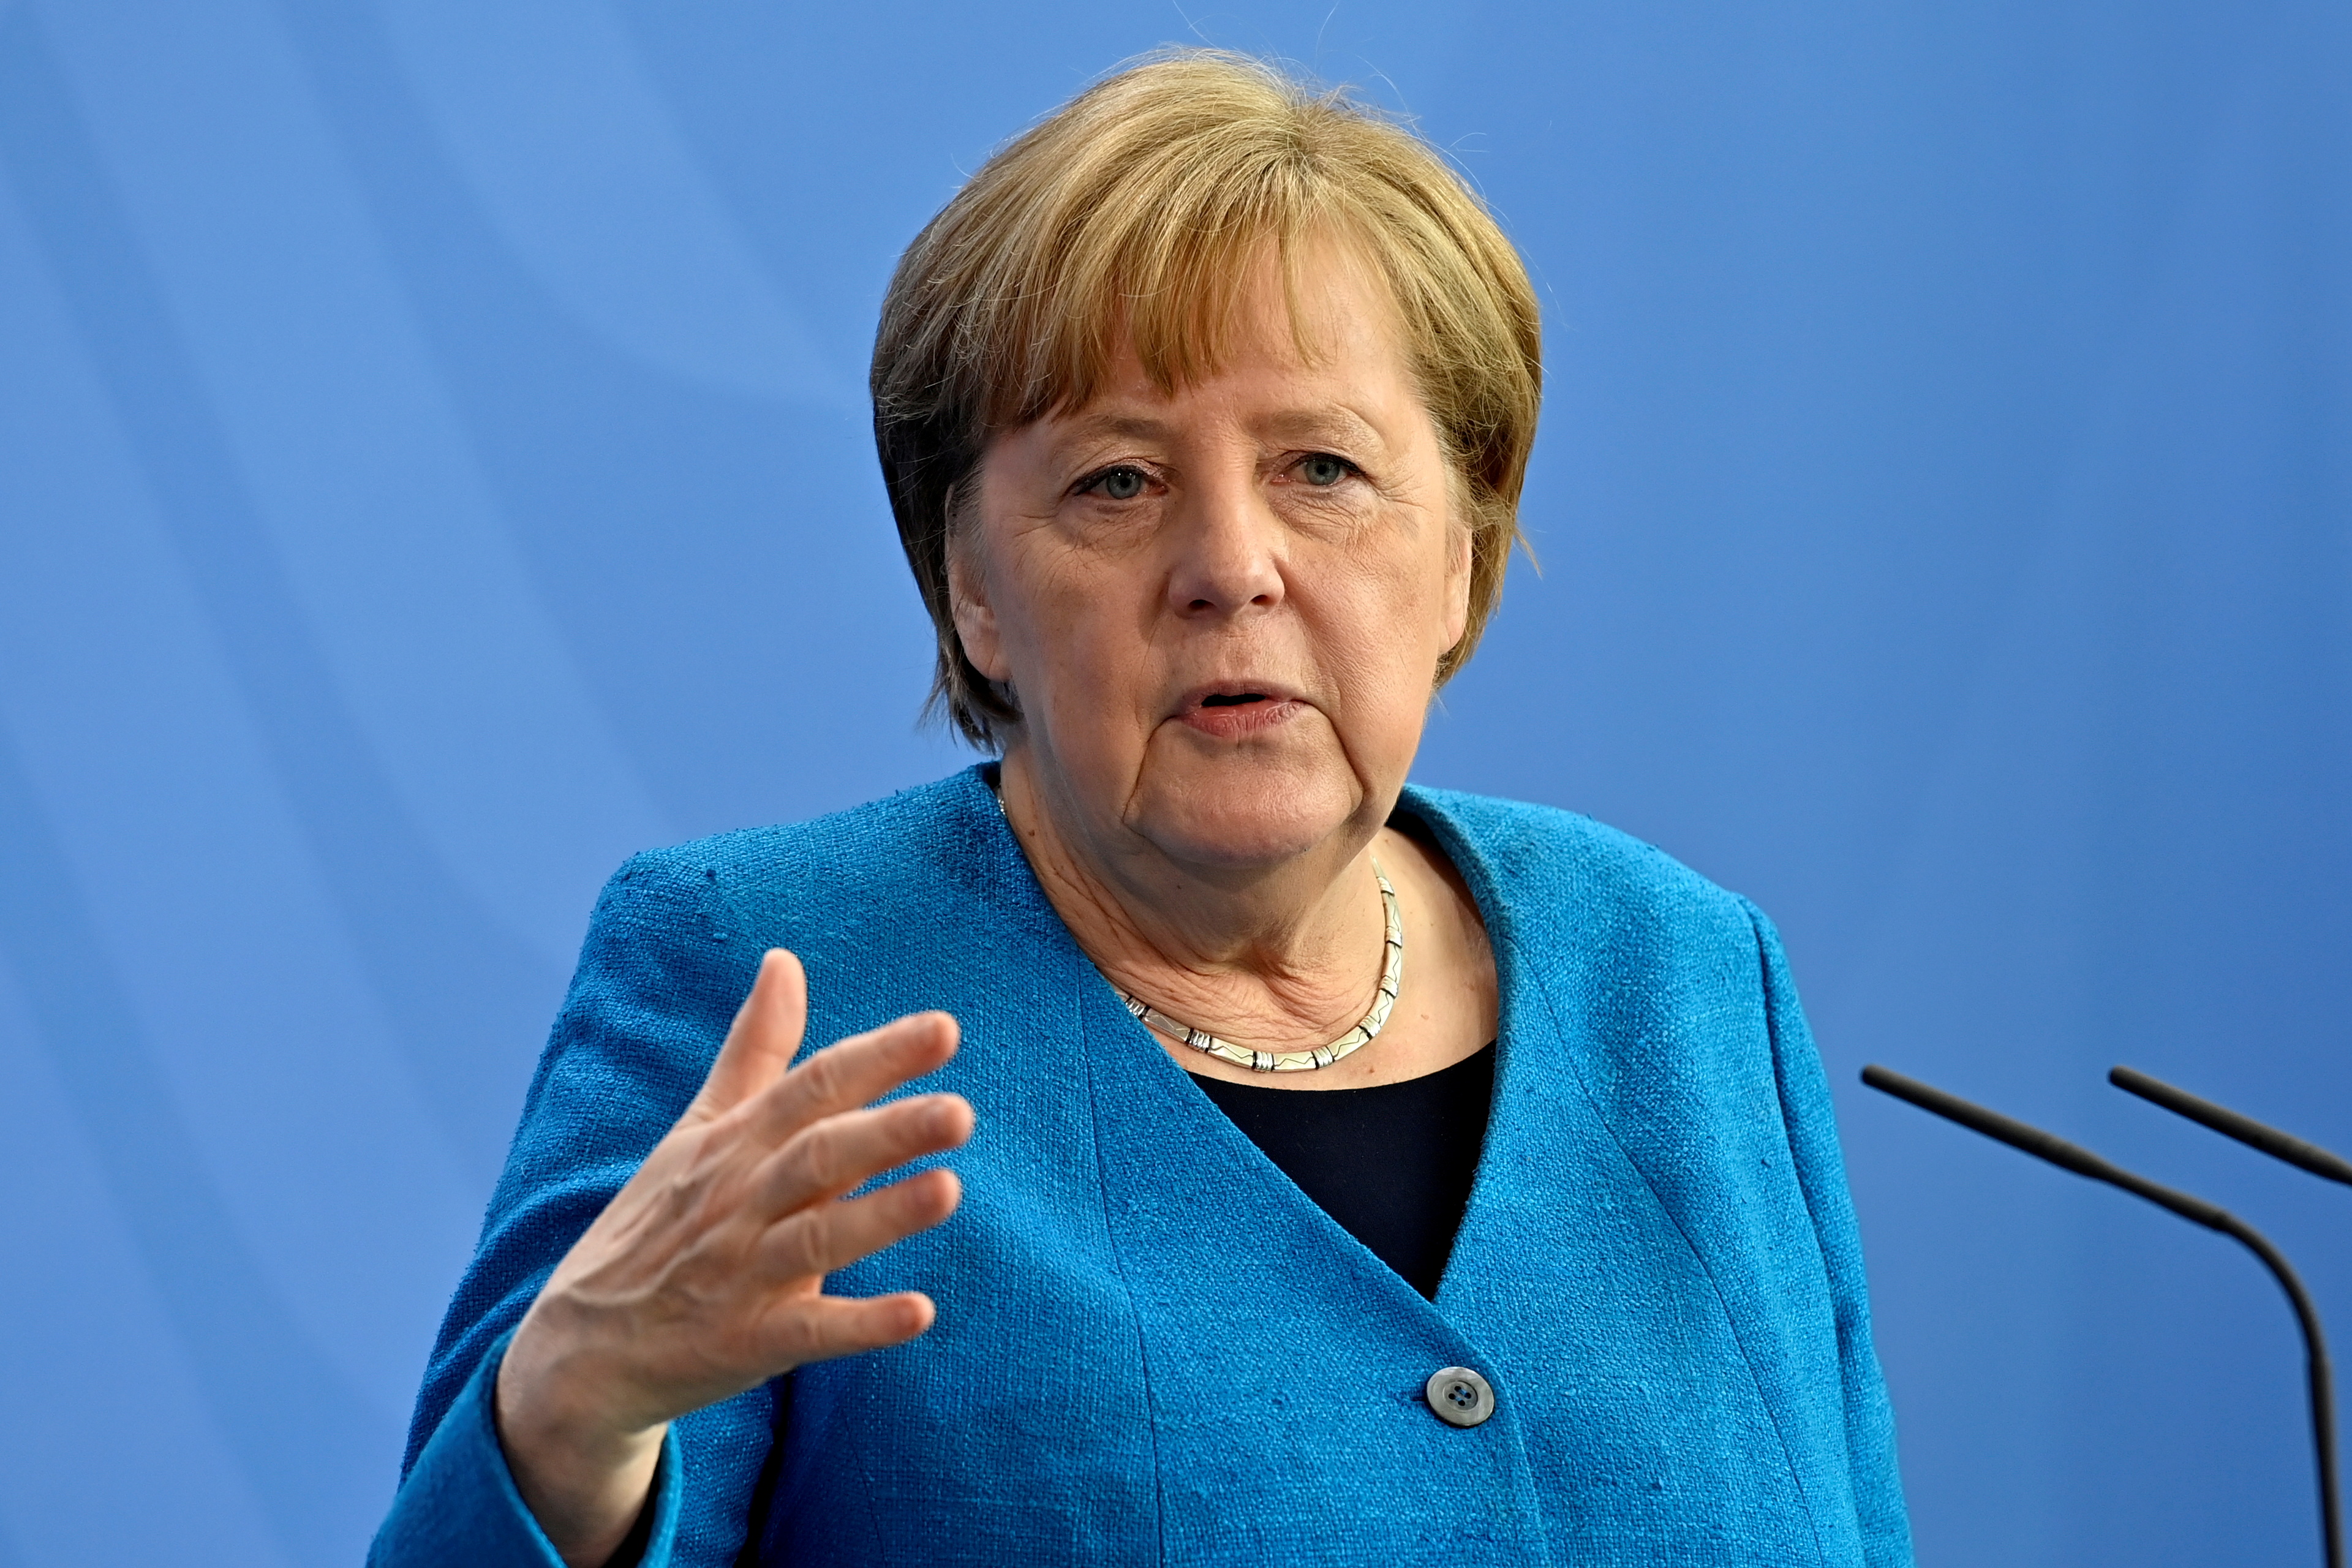 İtdən qorxan Merkelin “komsomol” keçmişi – MARAQLI FAKTLAR